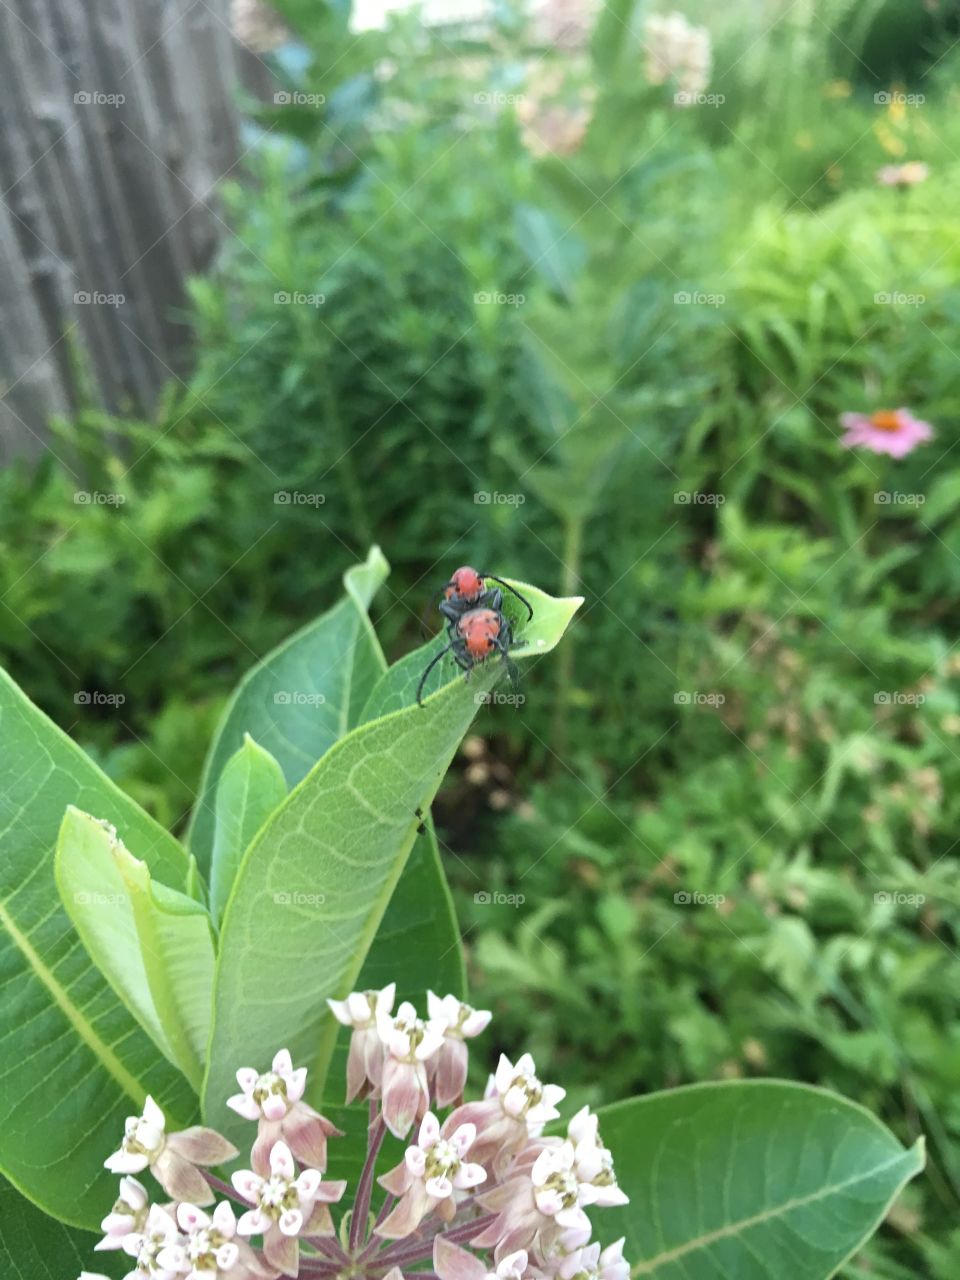 Red bugs on milkweed